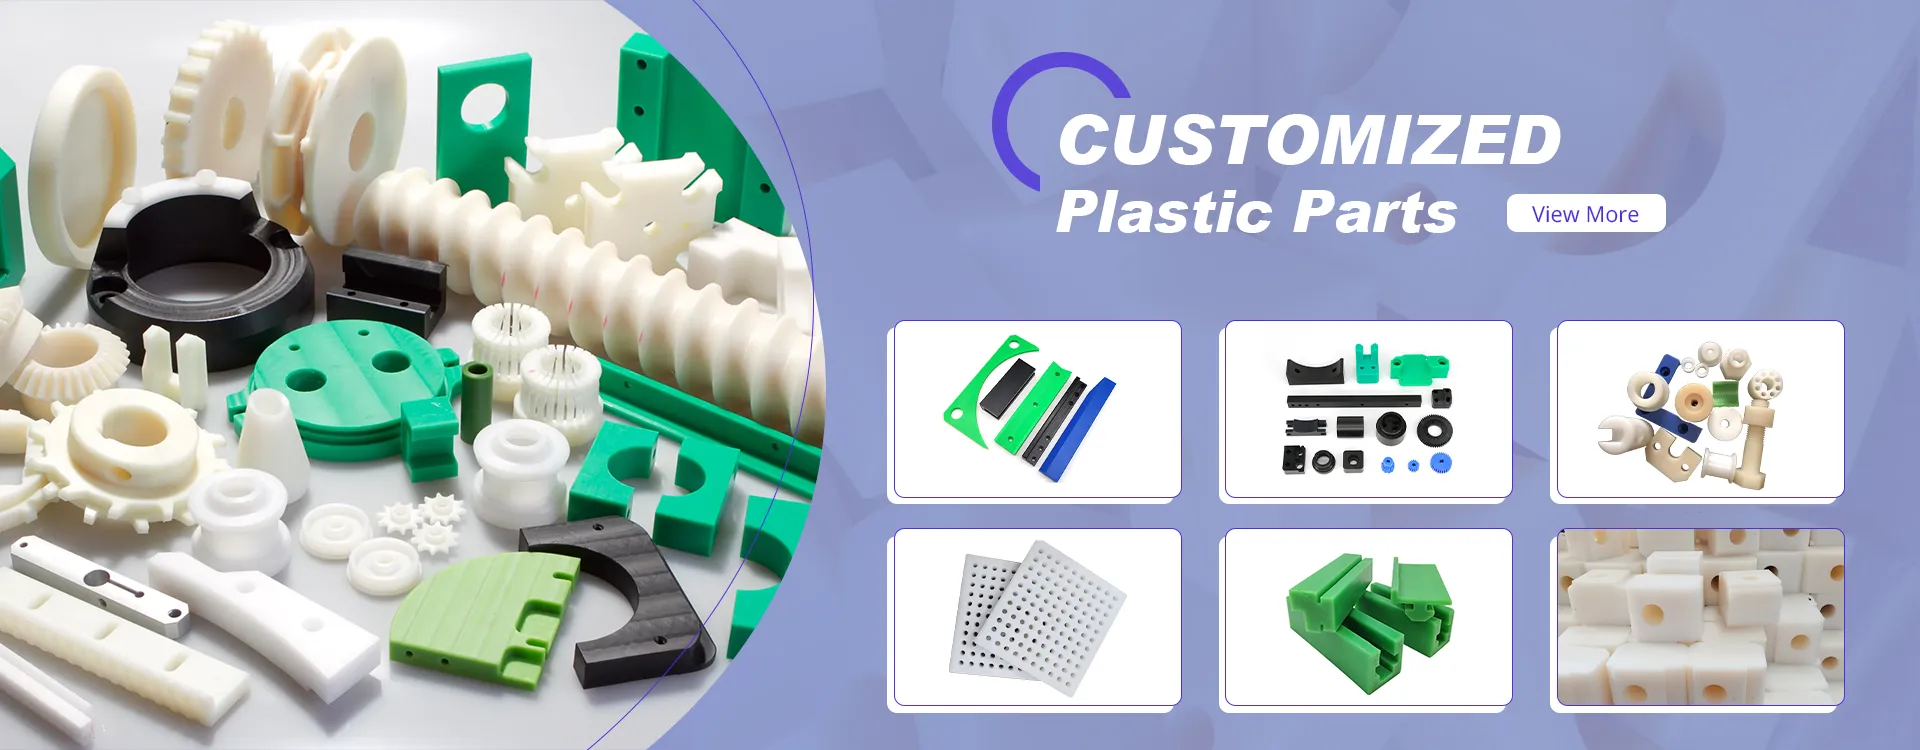 Customized Plastic Parts